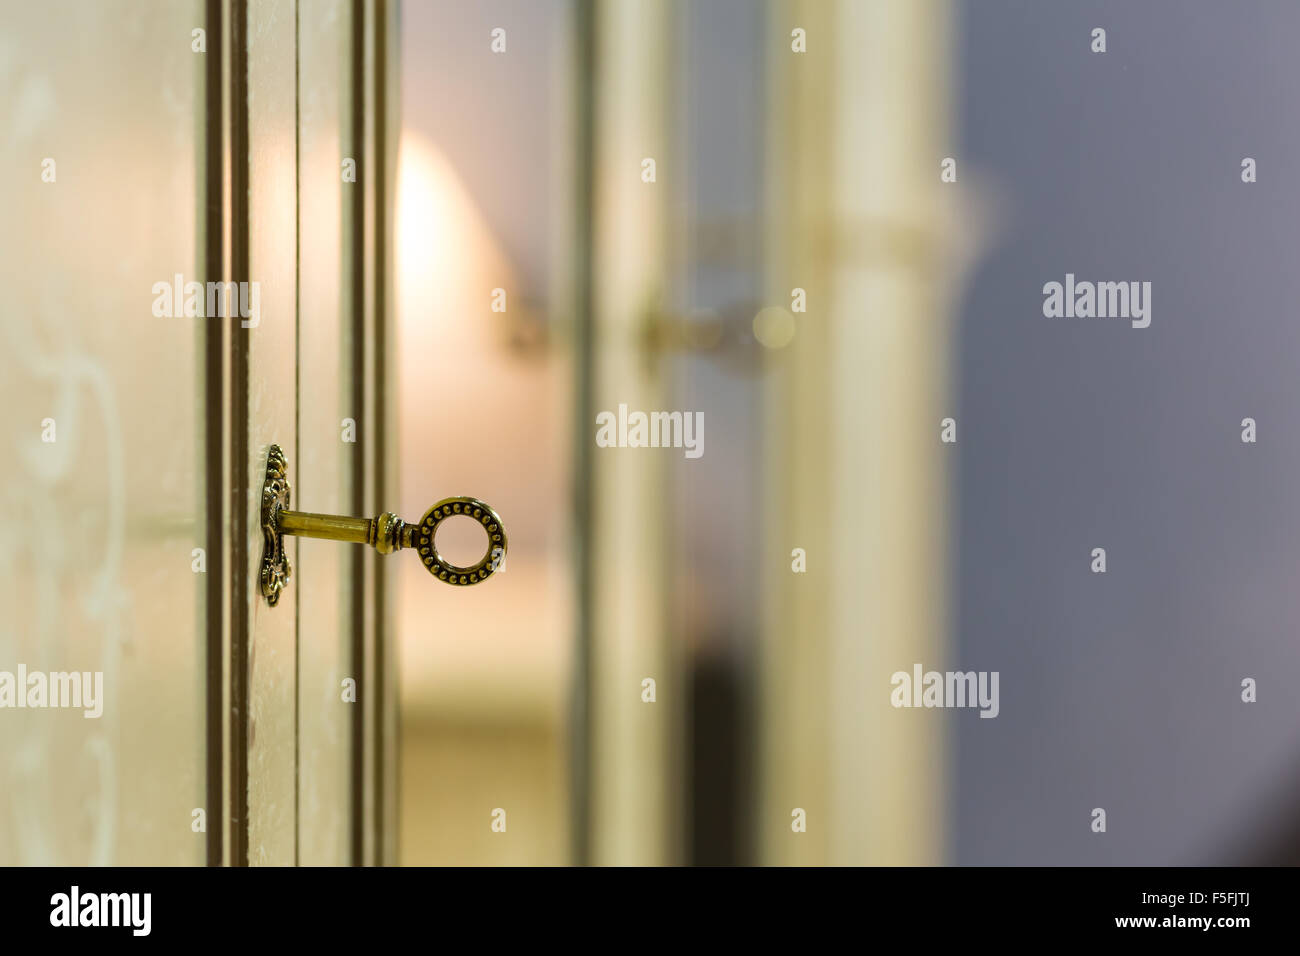 Key in the door lock Stock Photo